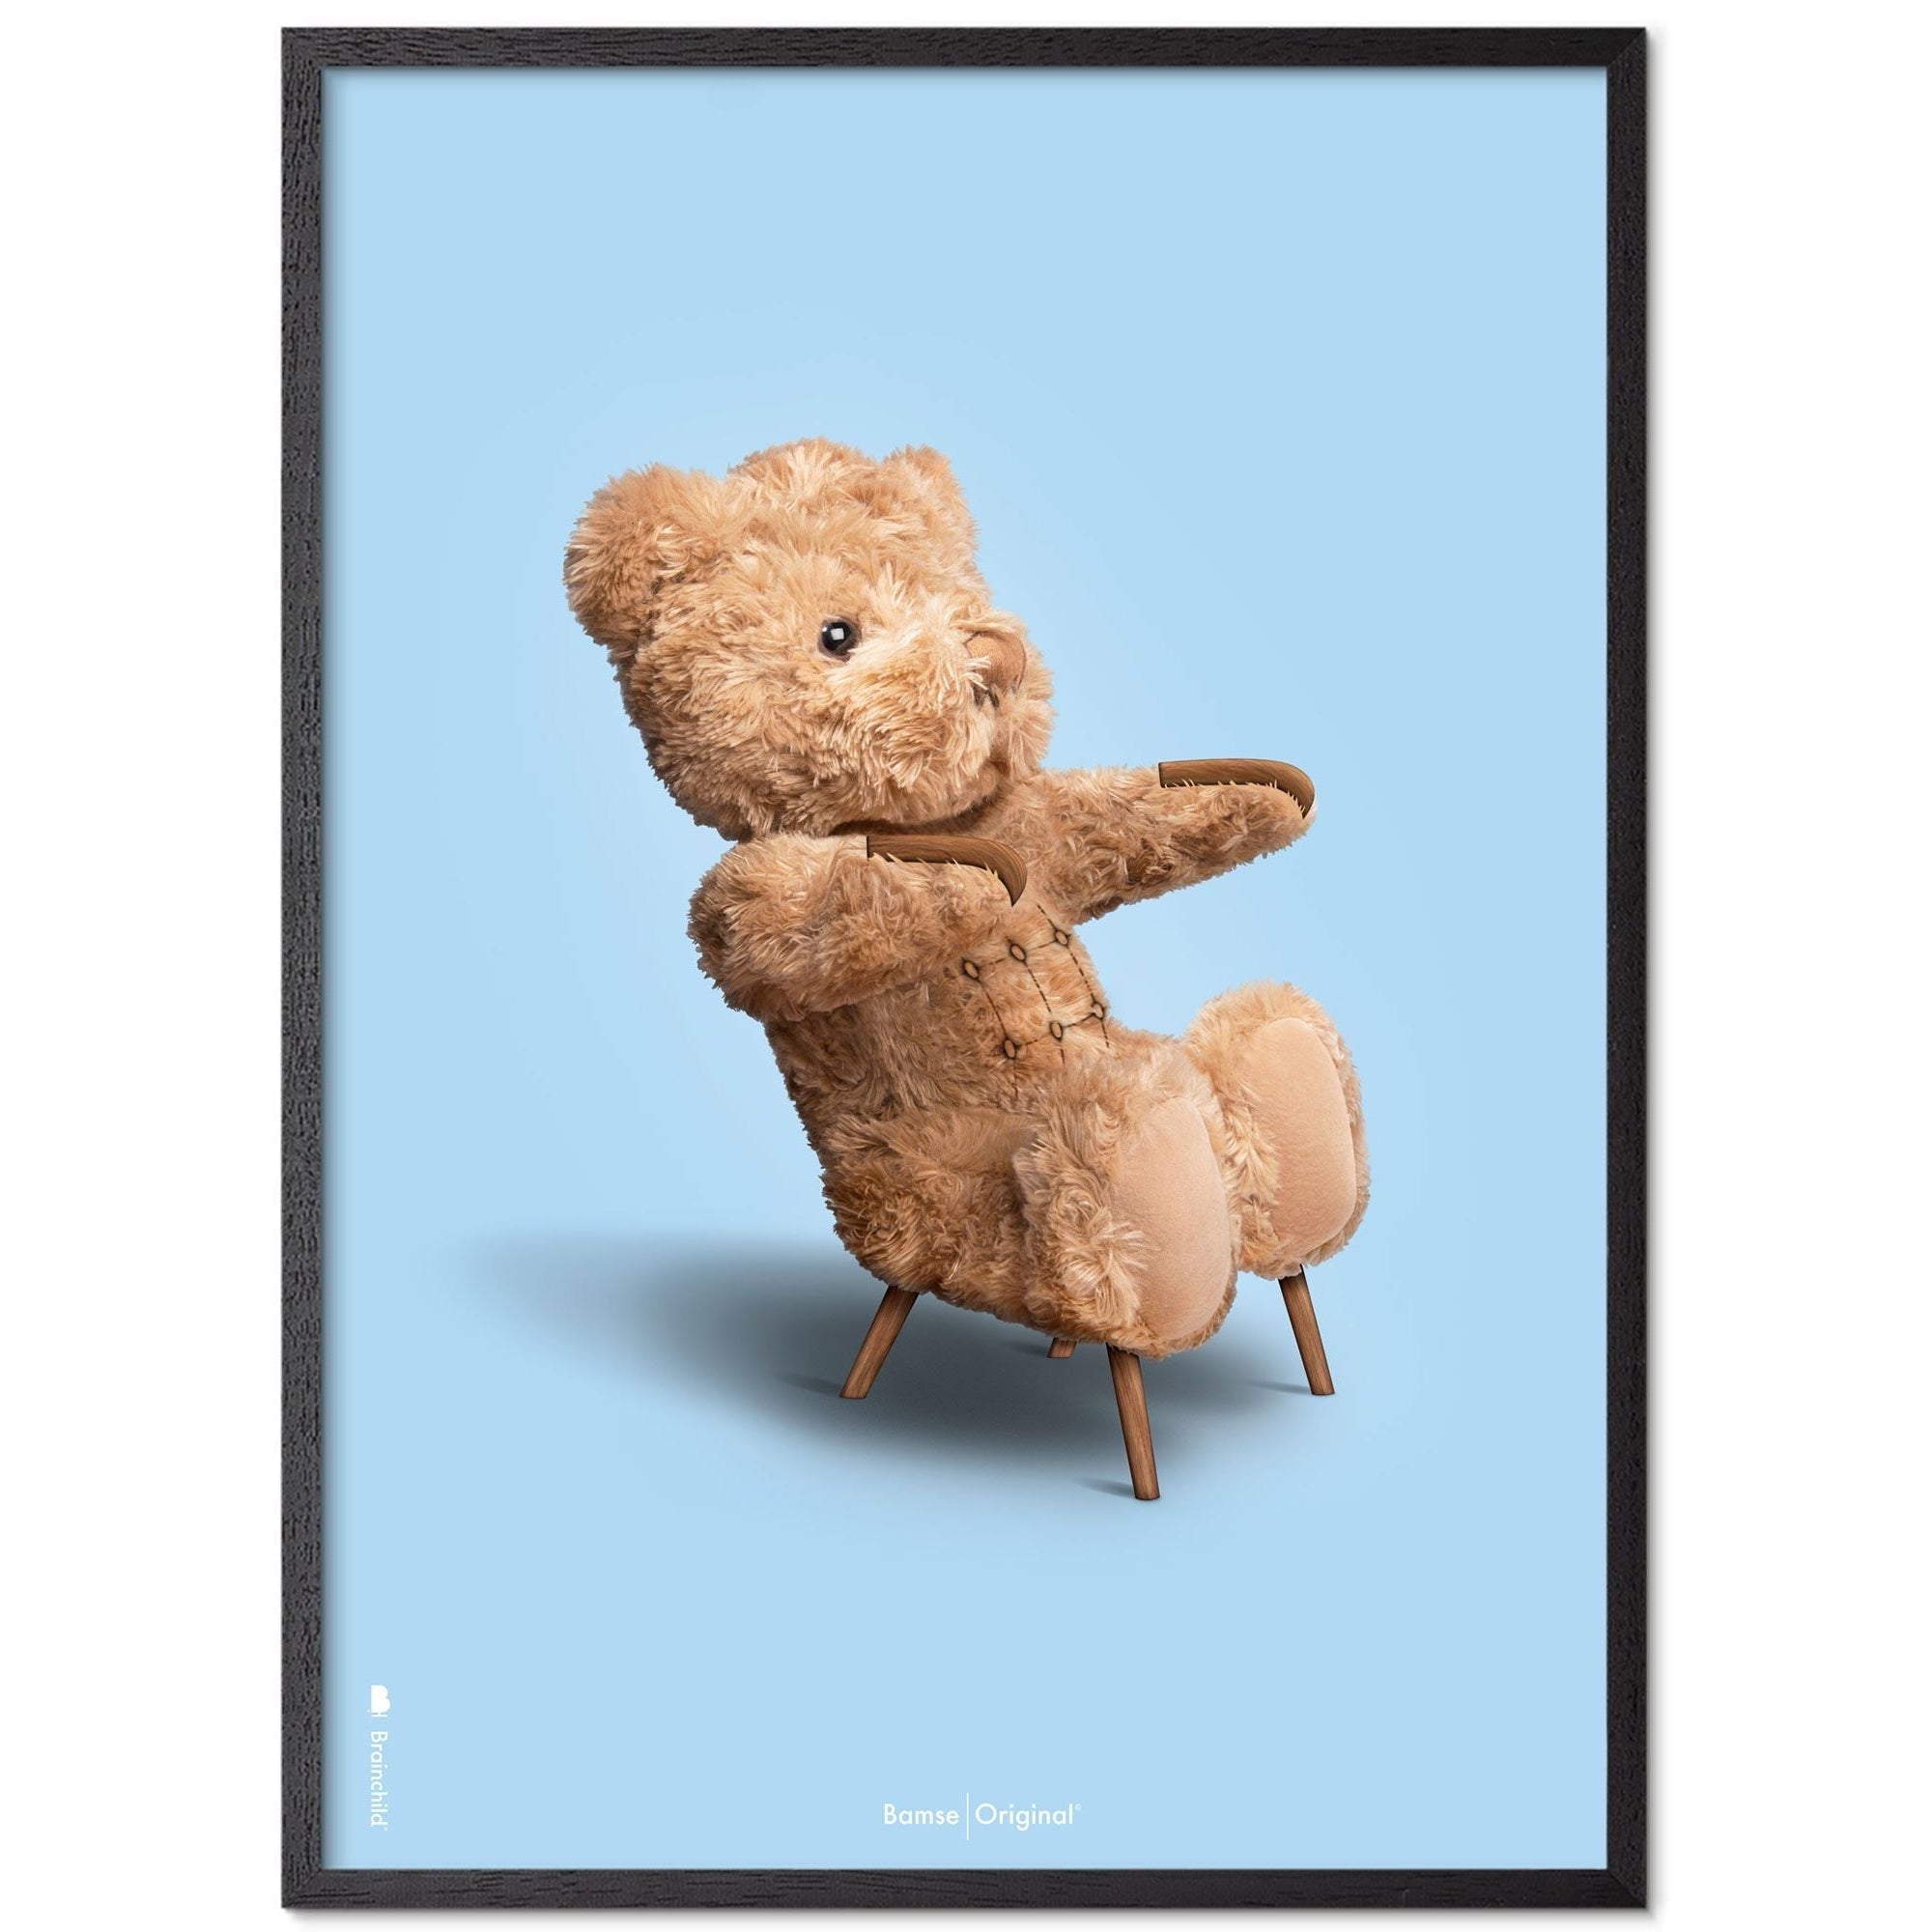 Brainchild Teddybär Classic Posterrahmen aus schwarz lackiertem Holz 30x40 cm, hellblauer Hintergrund